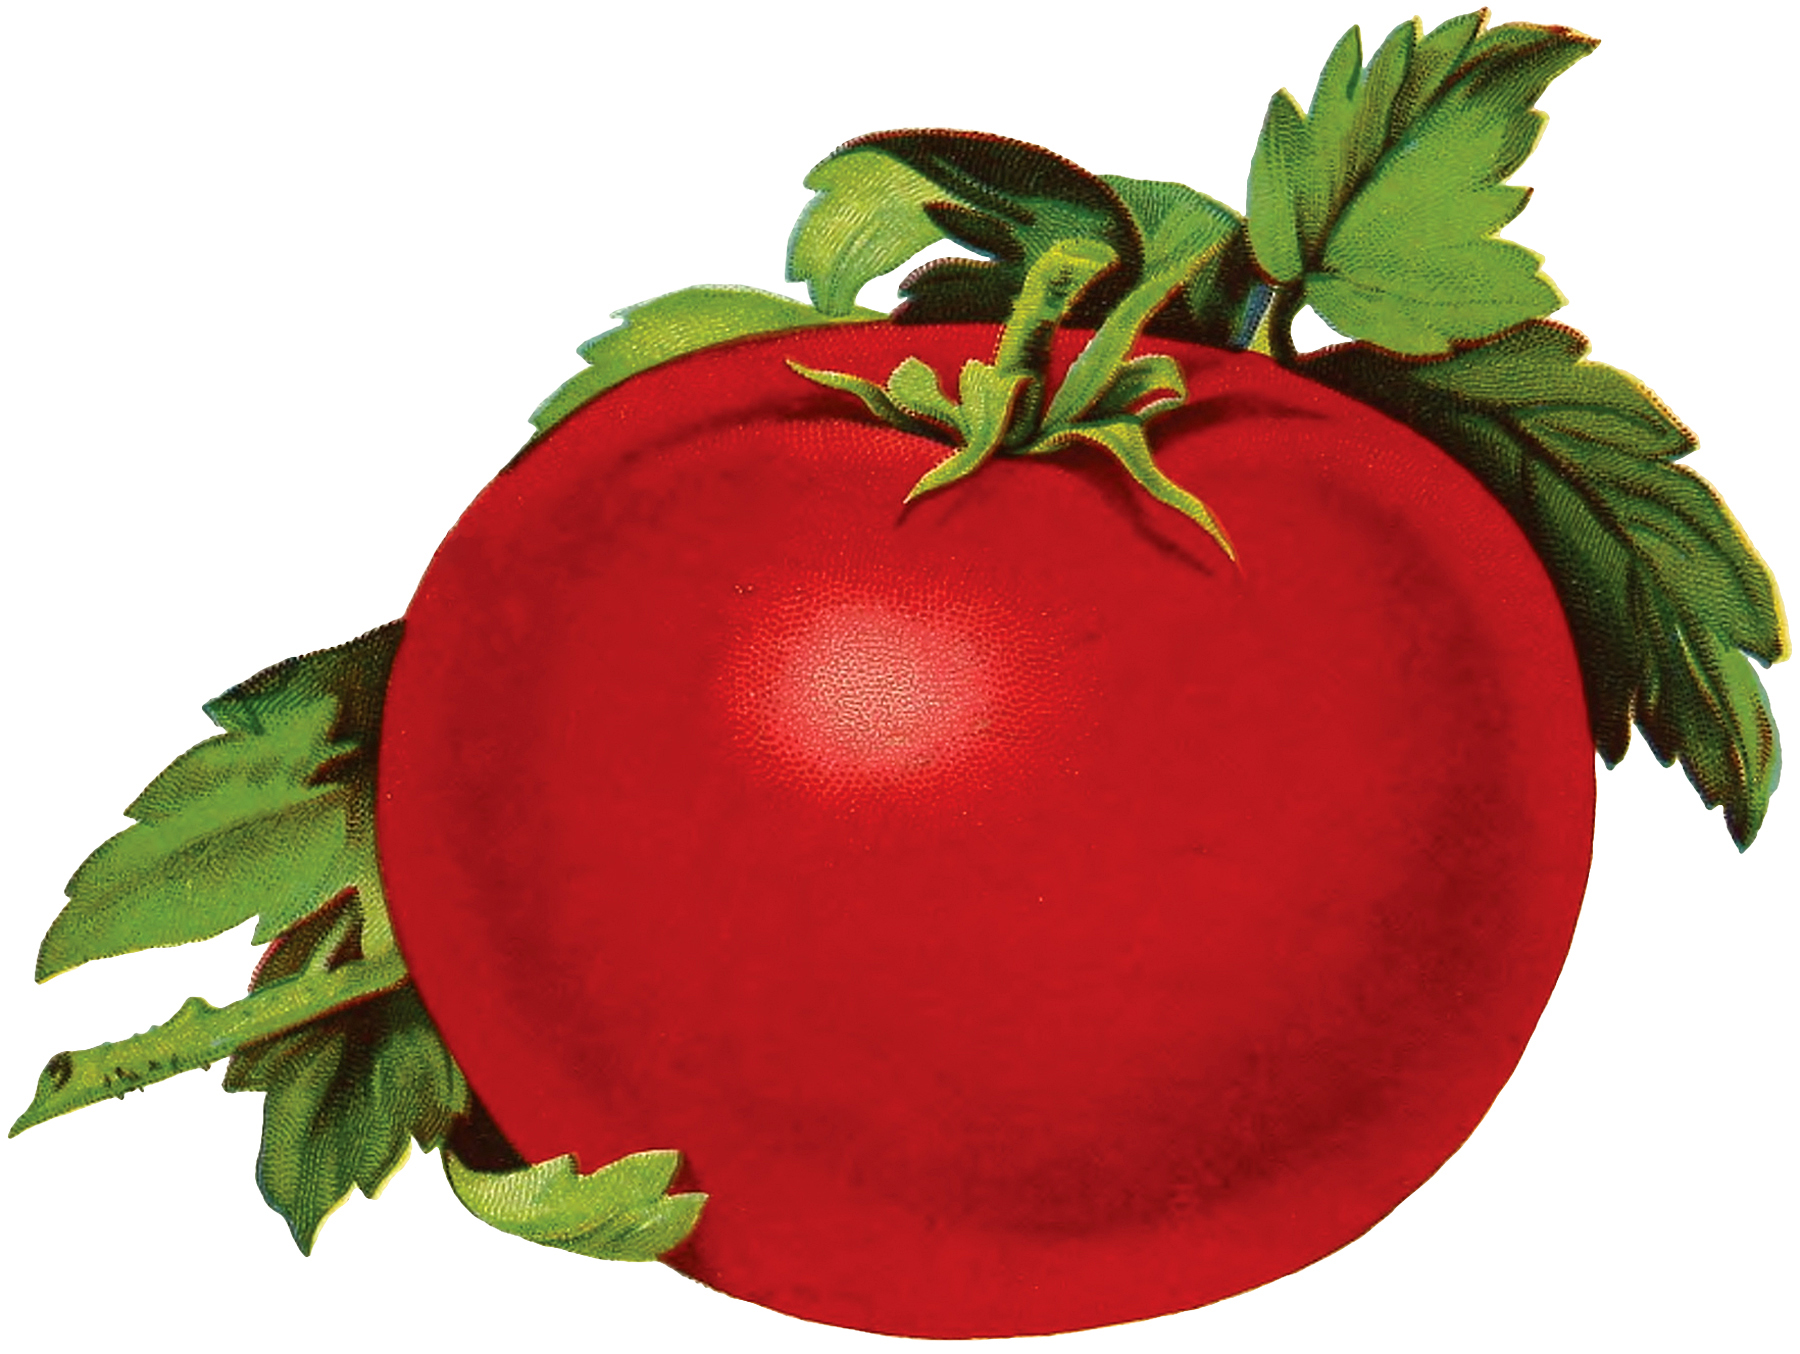 Free Tomato Image